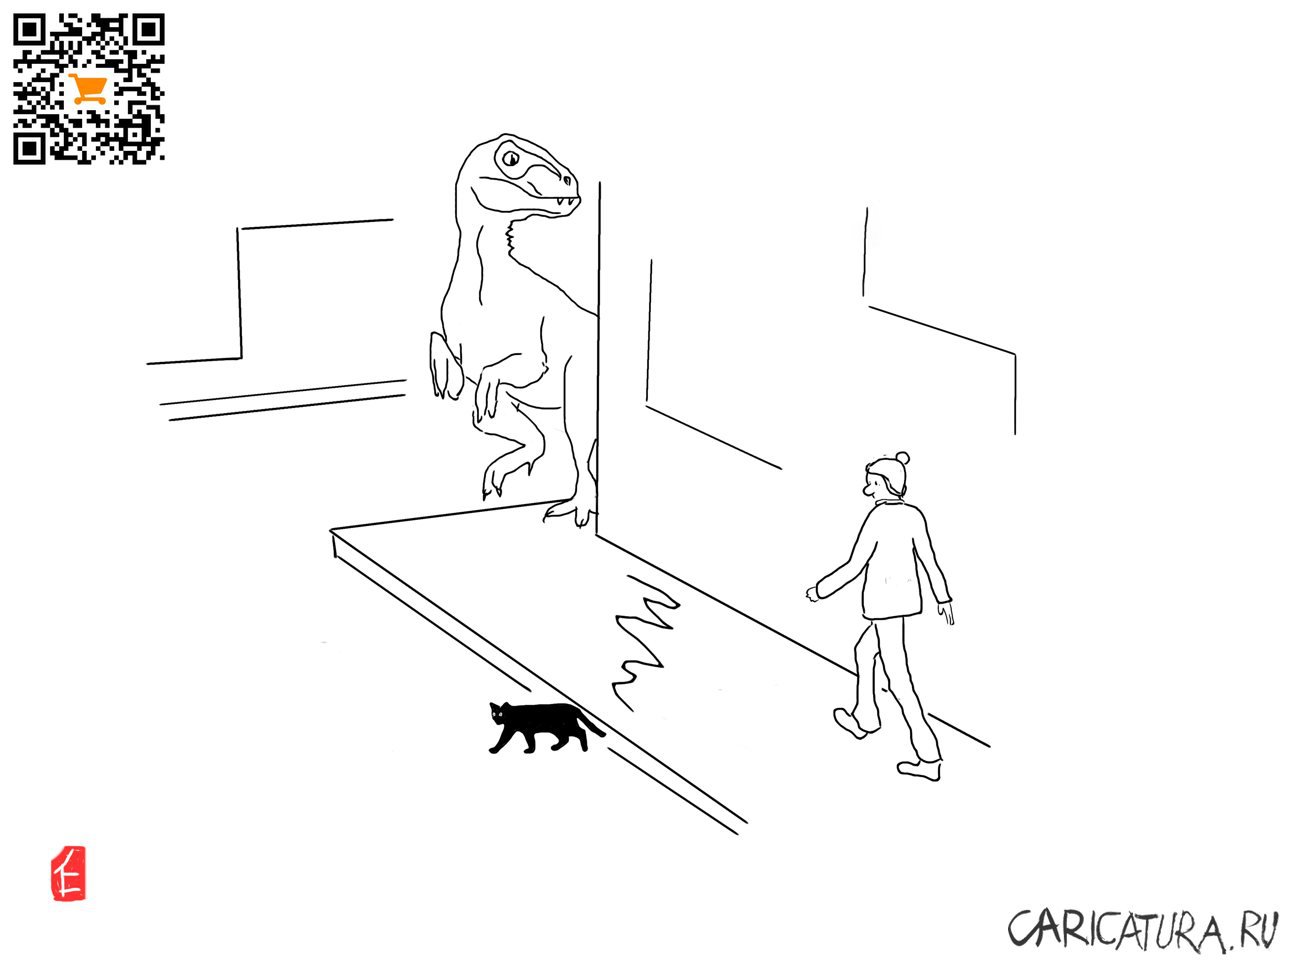 Карикатура "Черный кот", Евгений Лапин